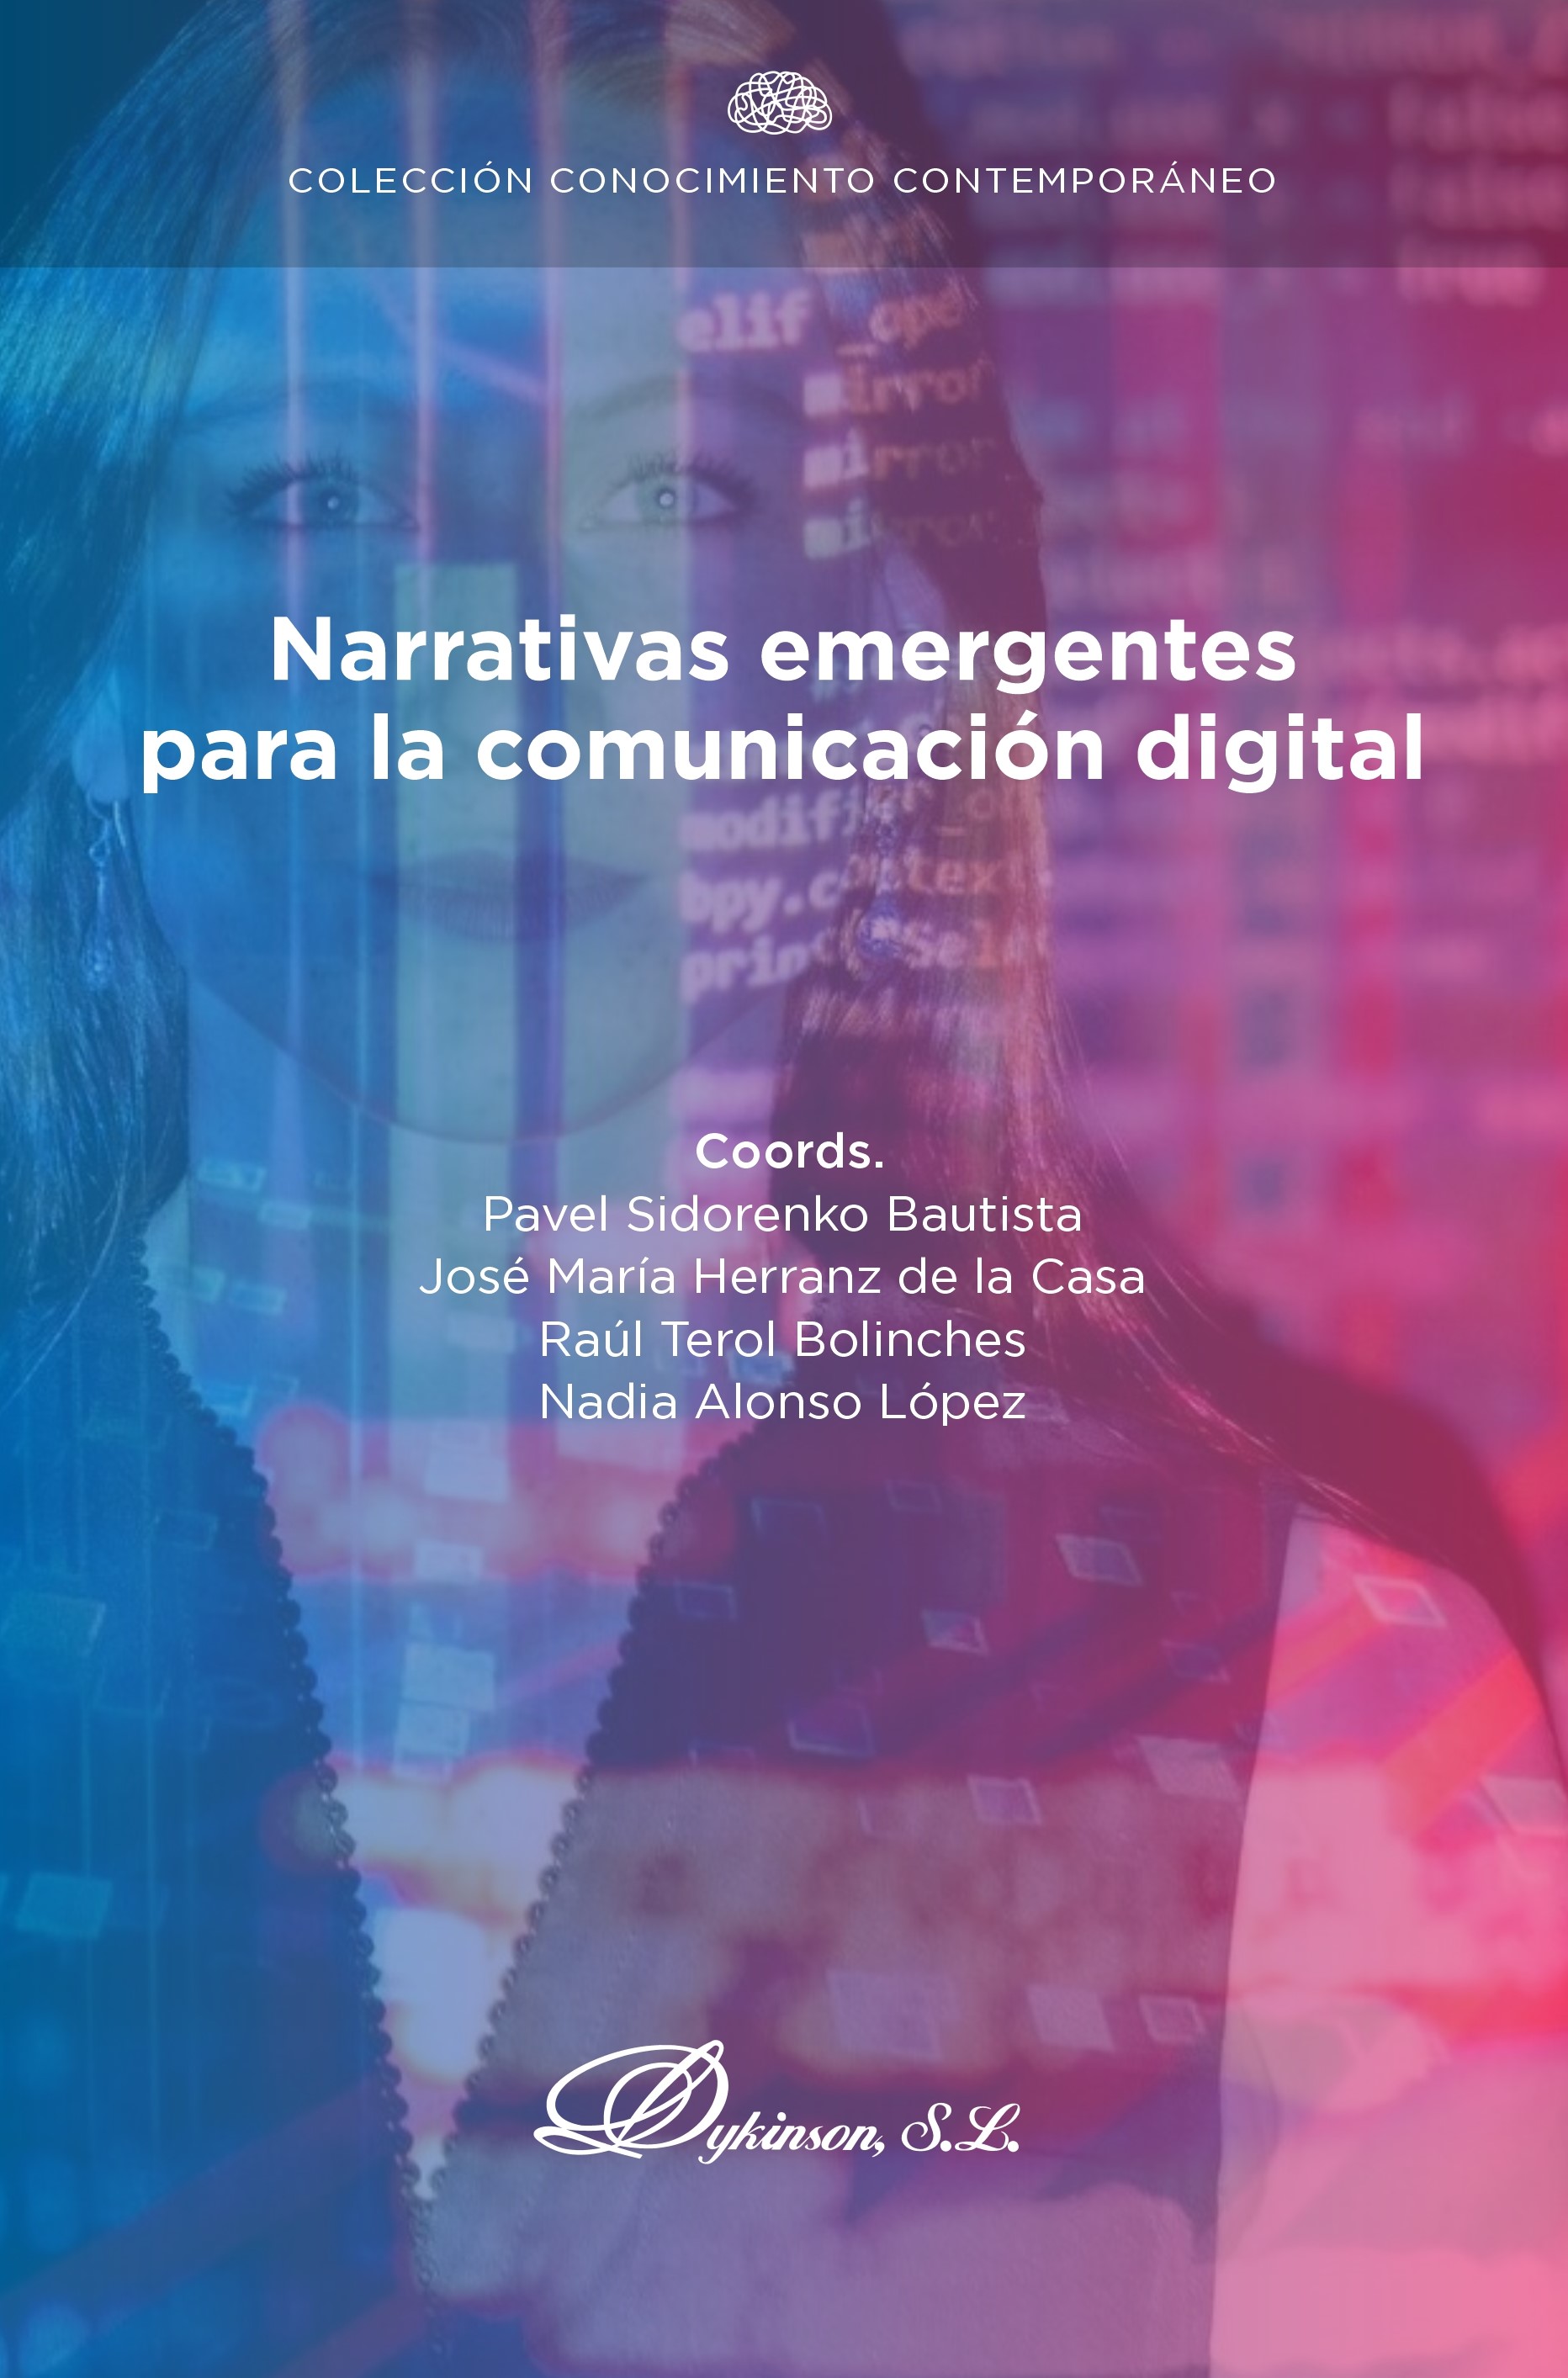 Imagen de portada del libro Narrativas emergentes para la comunicación digital